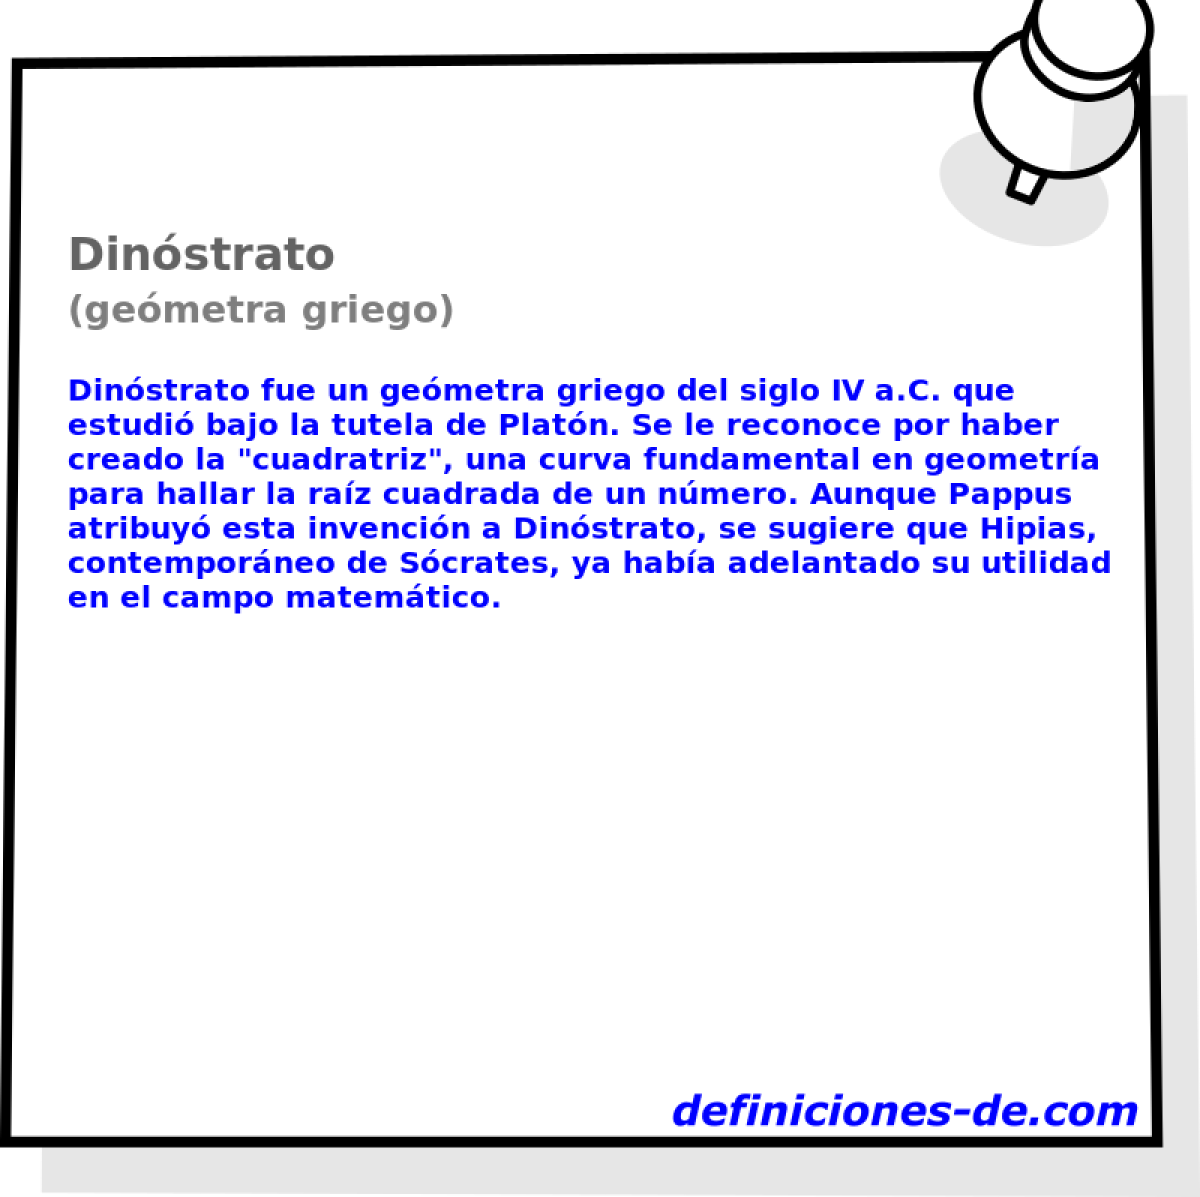 Dinstrato (gemetra griego)